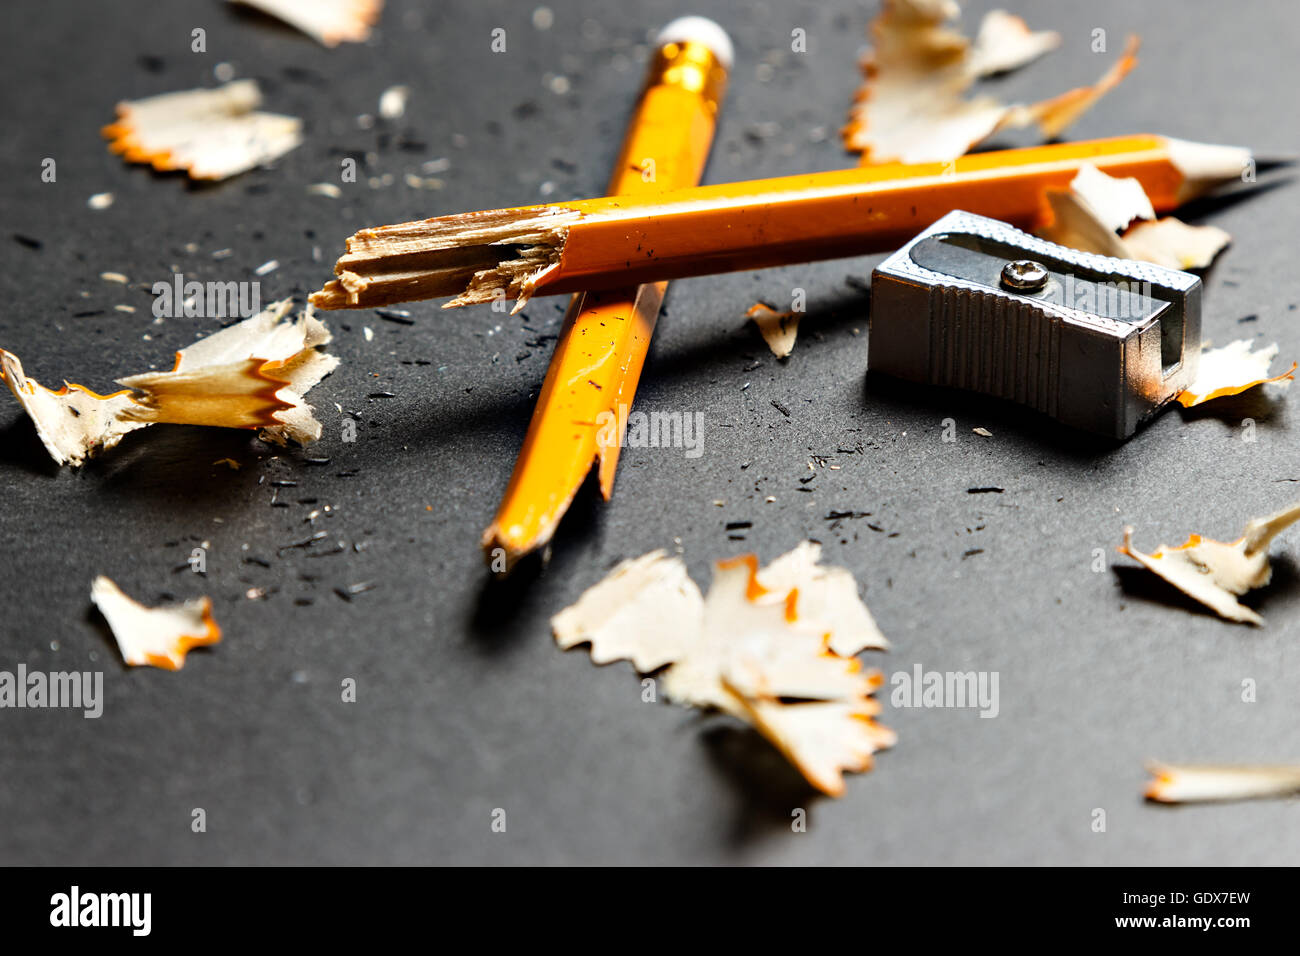 Broken Pencil sharpener et copeaux de métal sur fond noir. Image horizontale. Banque D'Images